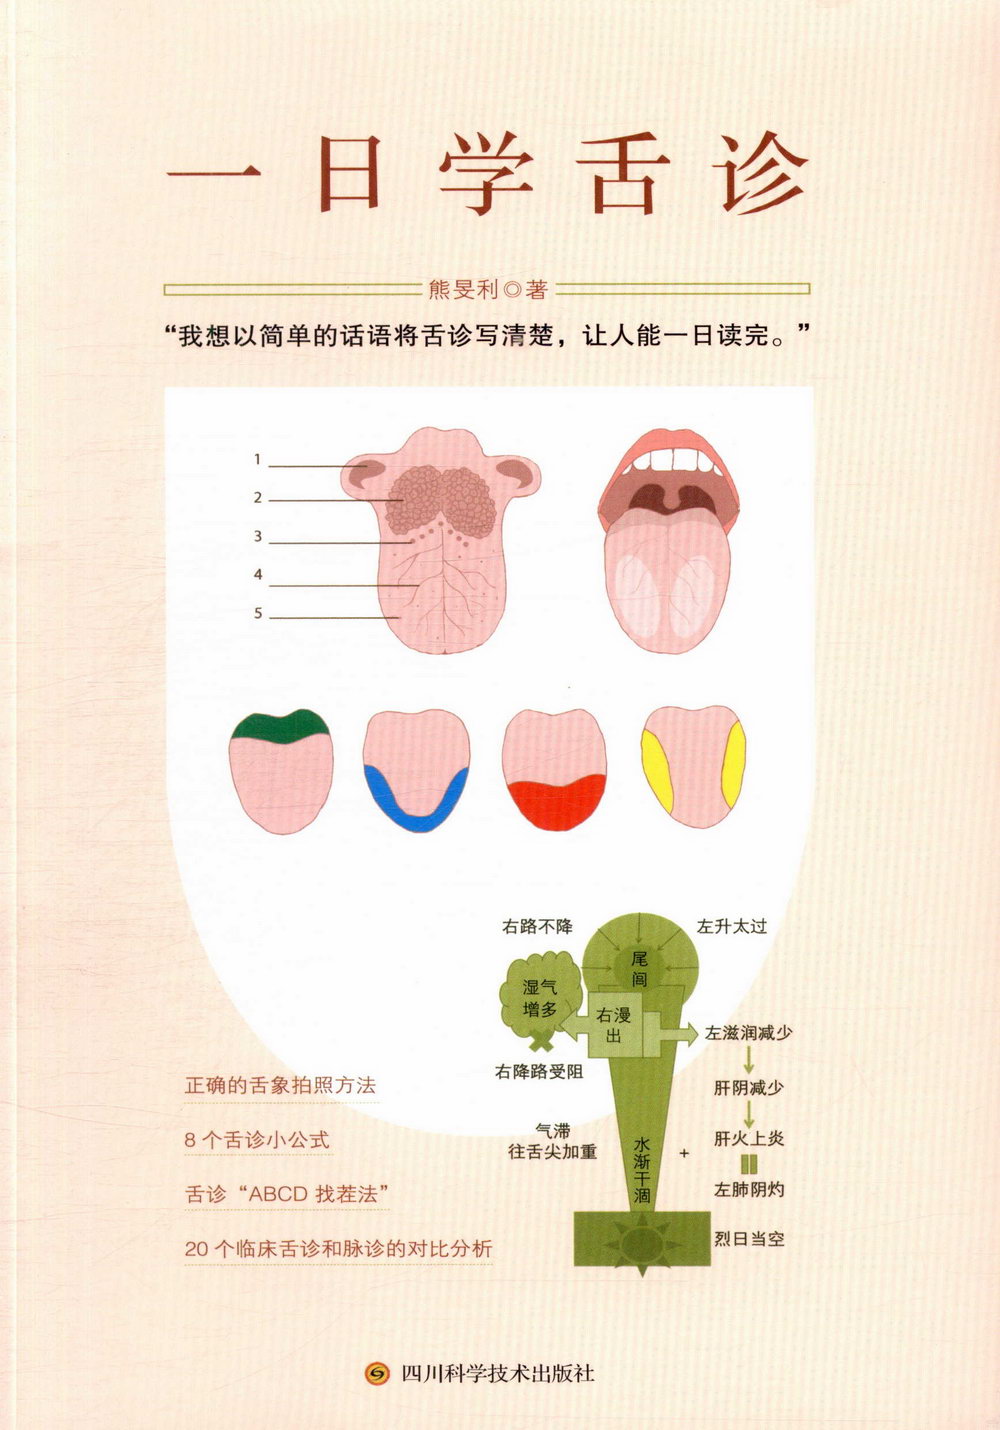 一日學舌診